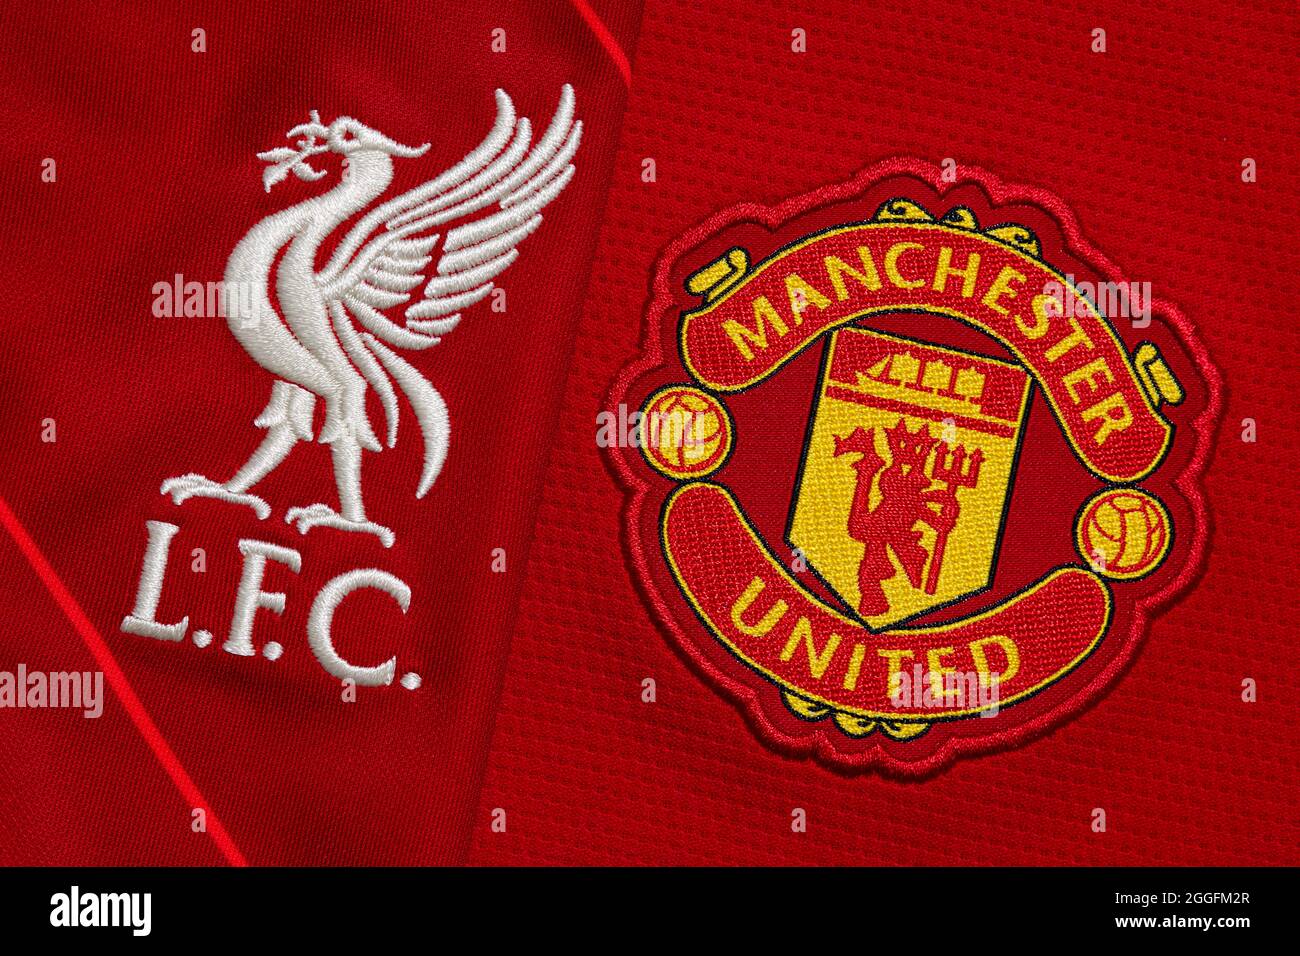 Nahaufnahme des Vereinswappens von Manchester United & Liverpool FC Stockfoto